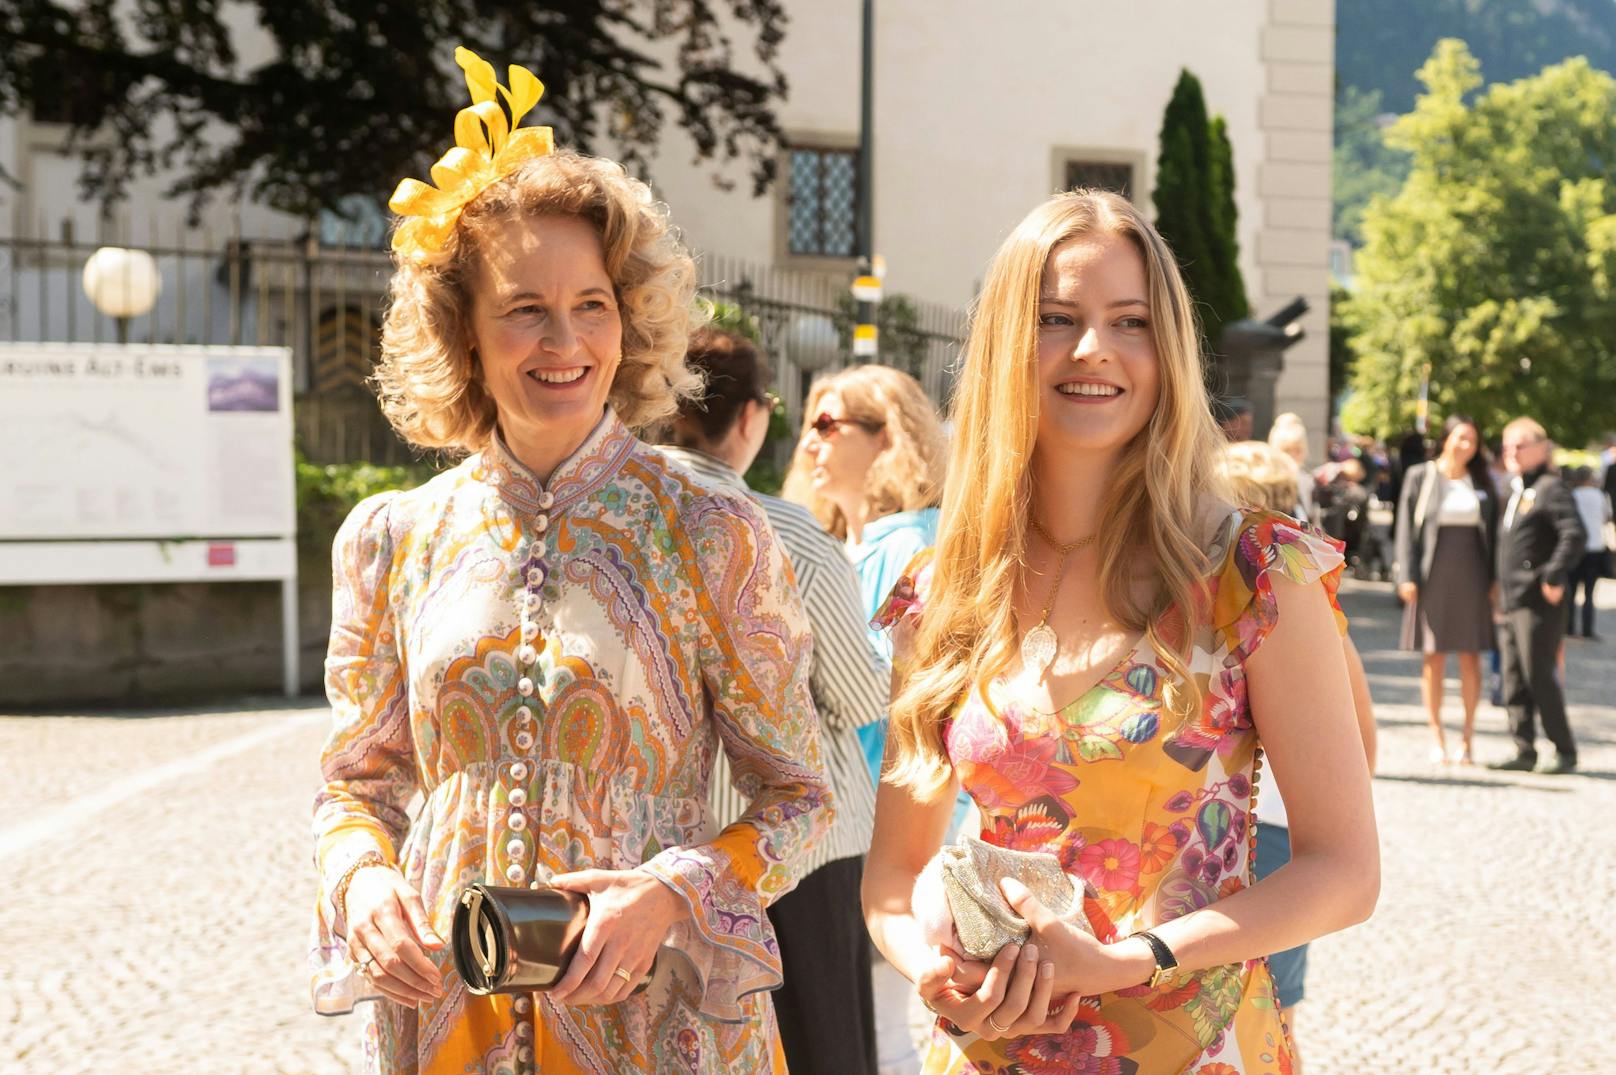 Auch die Royals aus Liechtenstein waren anwesend. Prinzessin Sophie und Prinzessin Marie Caroline trugen sommerliche Kleider mit floralem Muster.